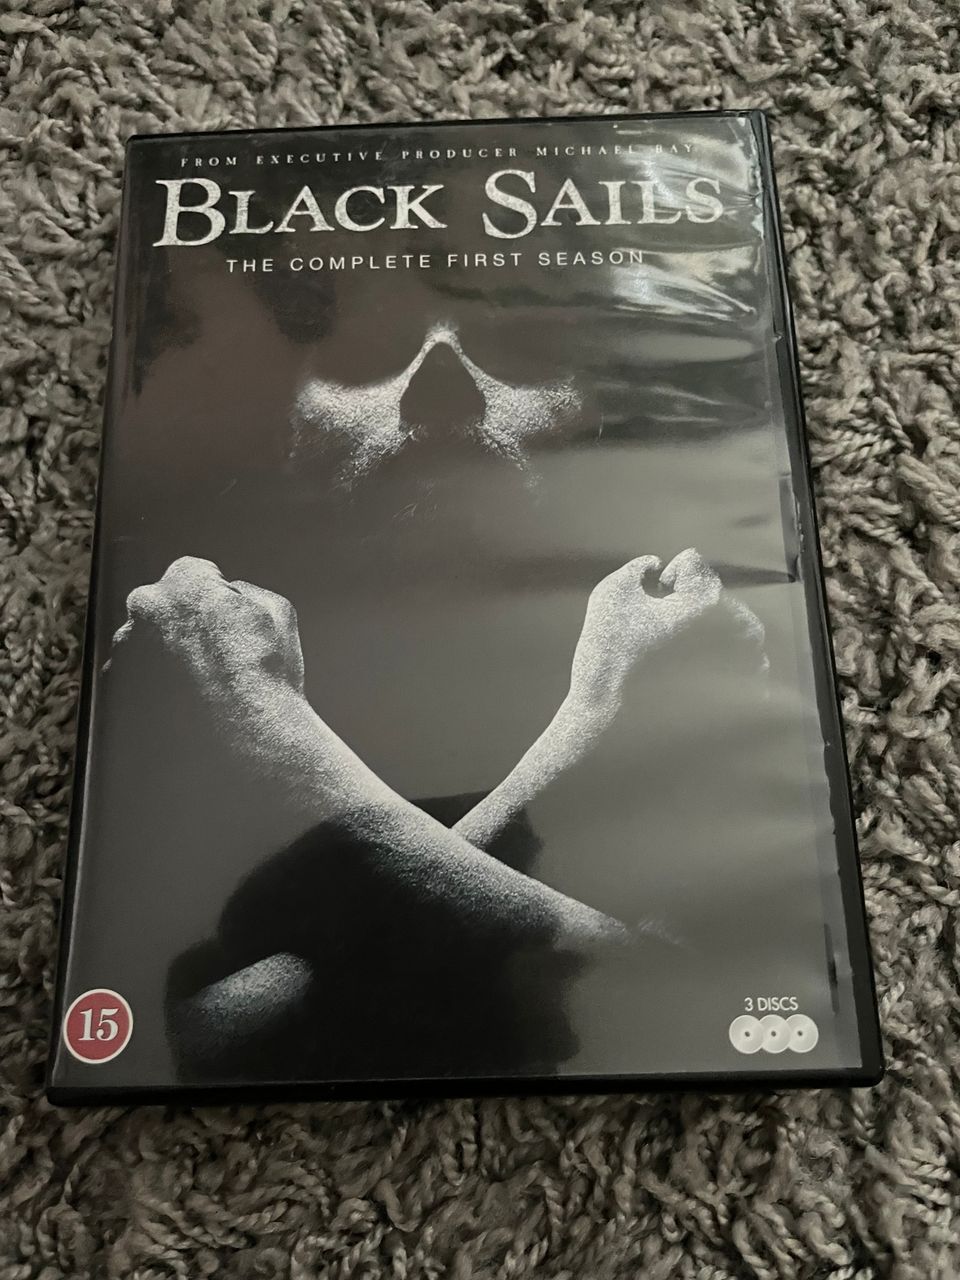 Black Sails first season